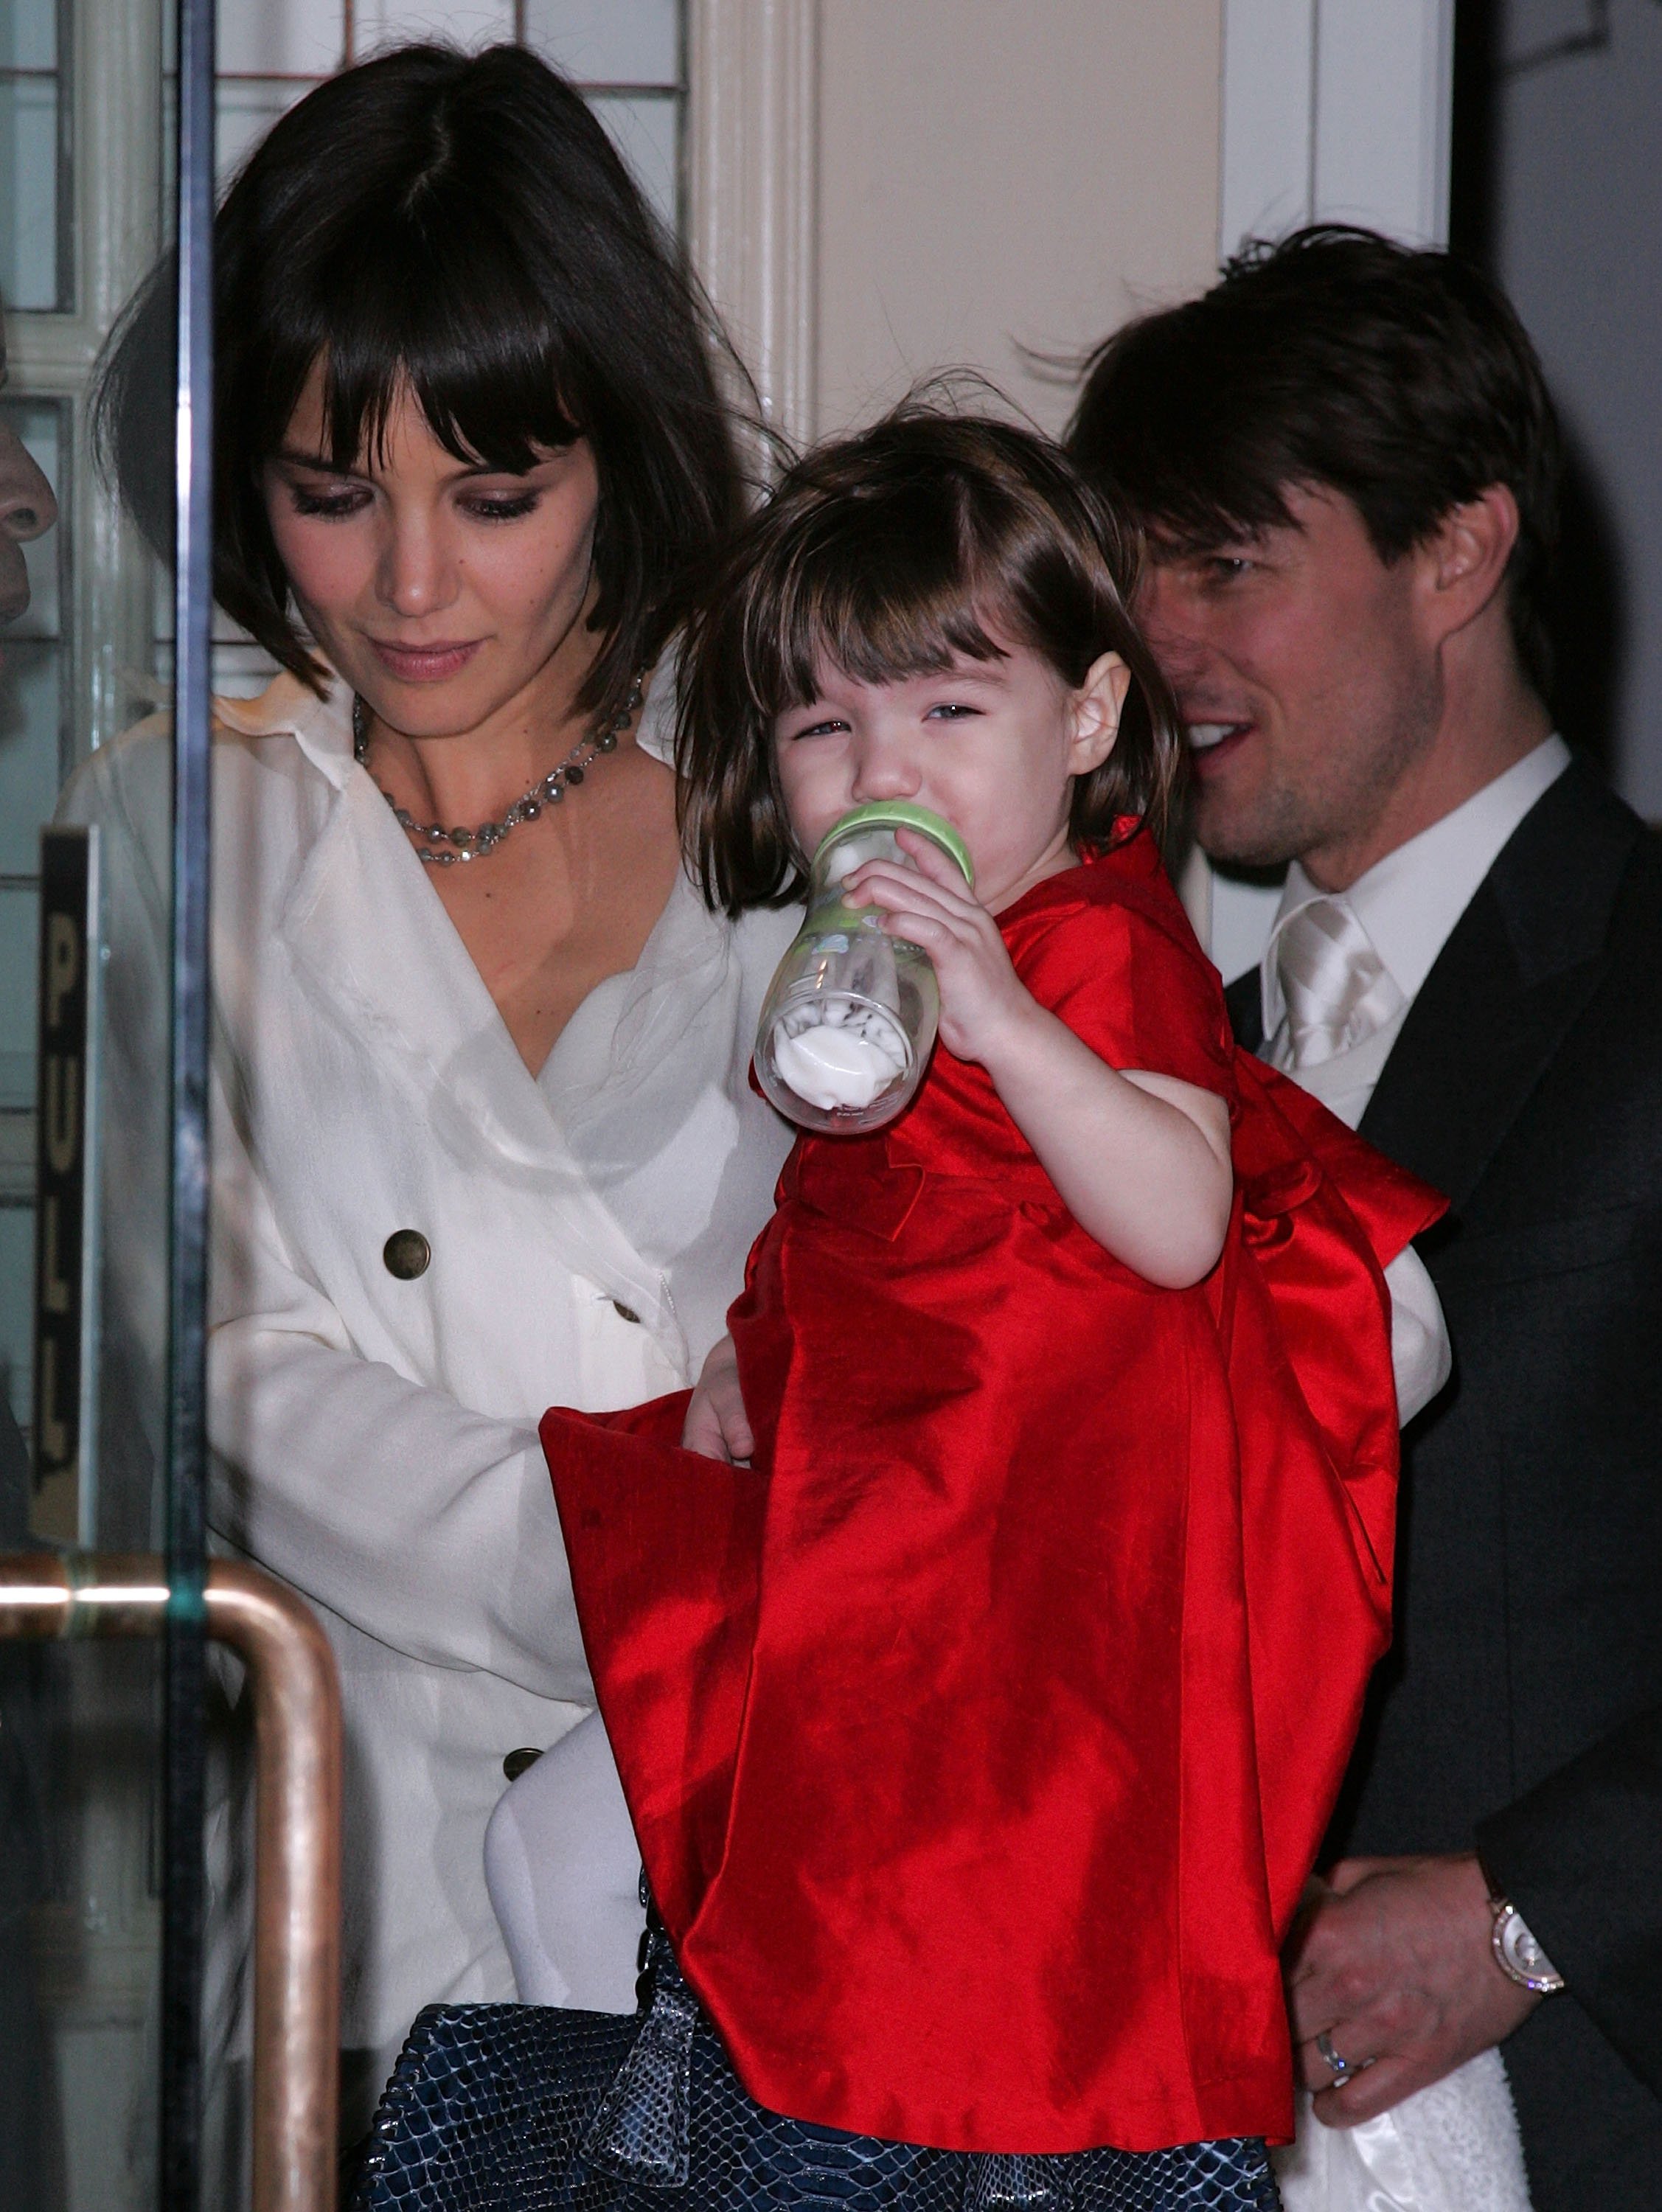 Katie Holmes und Tom Cruise mit ihrer Tochter Suri Cruise beim Verlassen des Hauses am 14. Januar 2008 in New York City. | Quelle: Getty Images